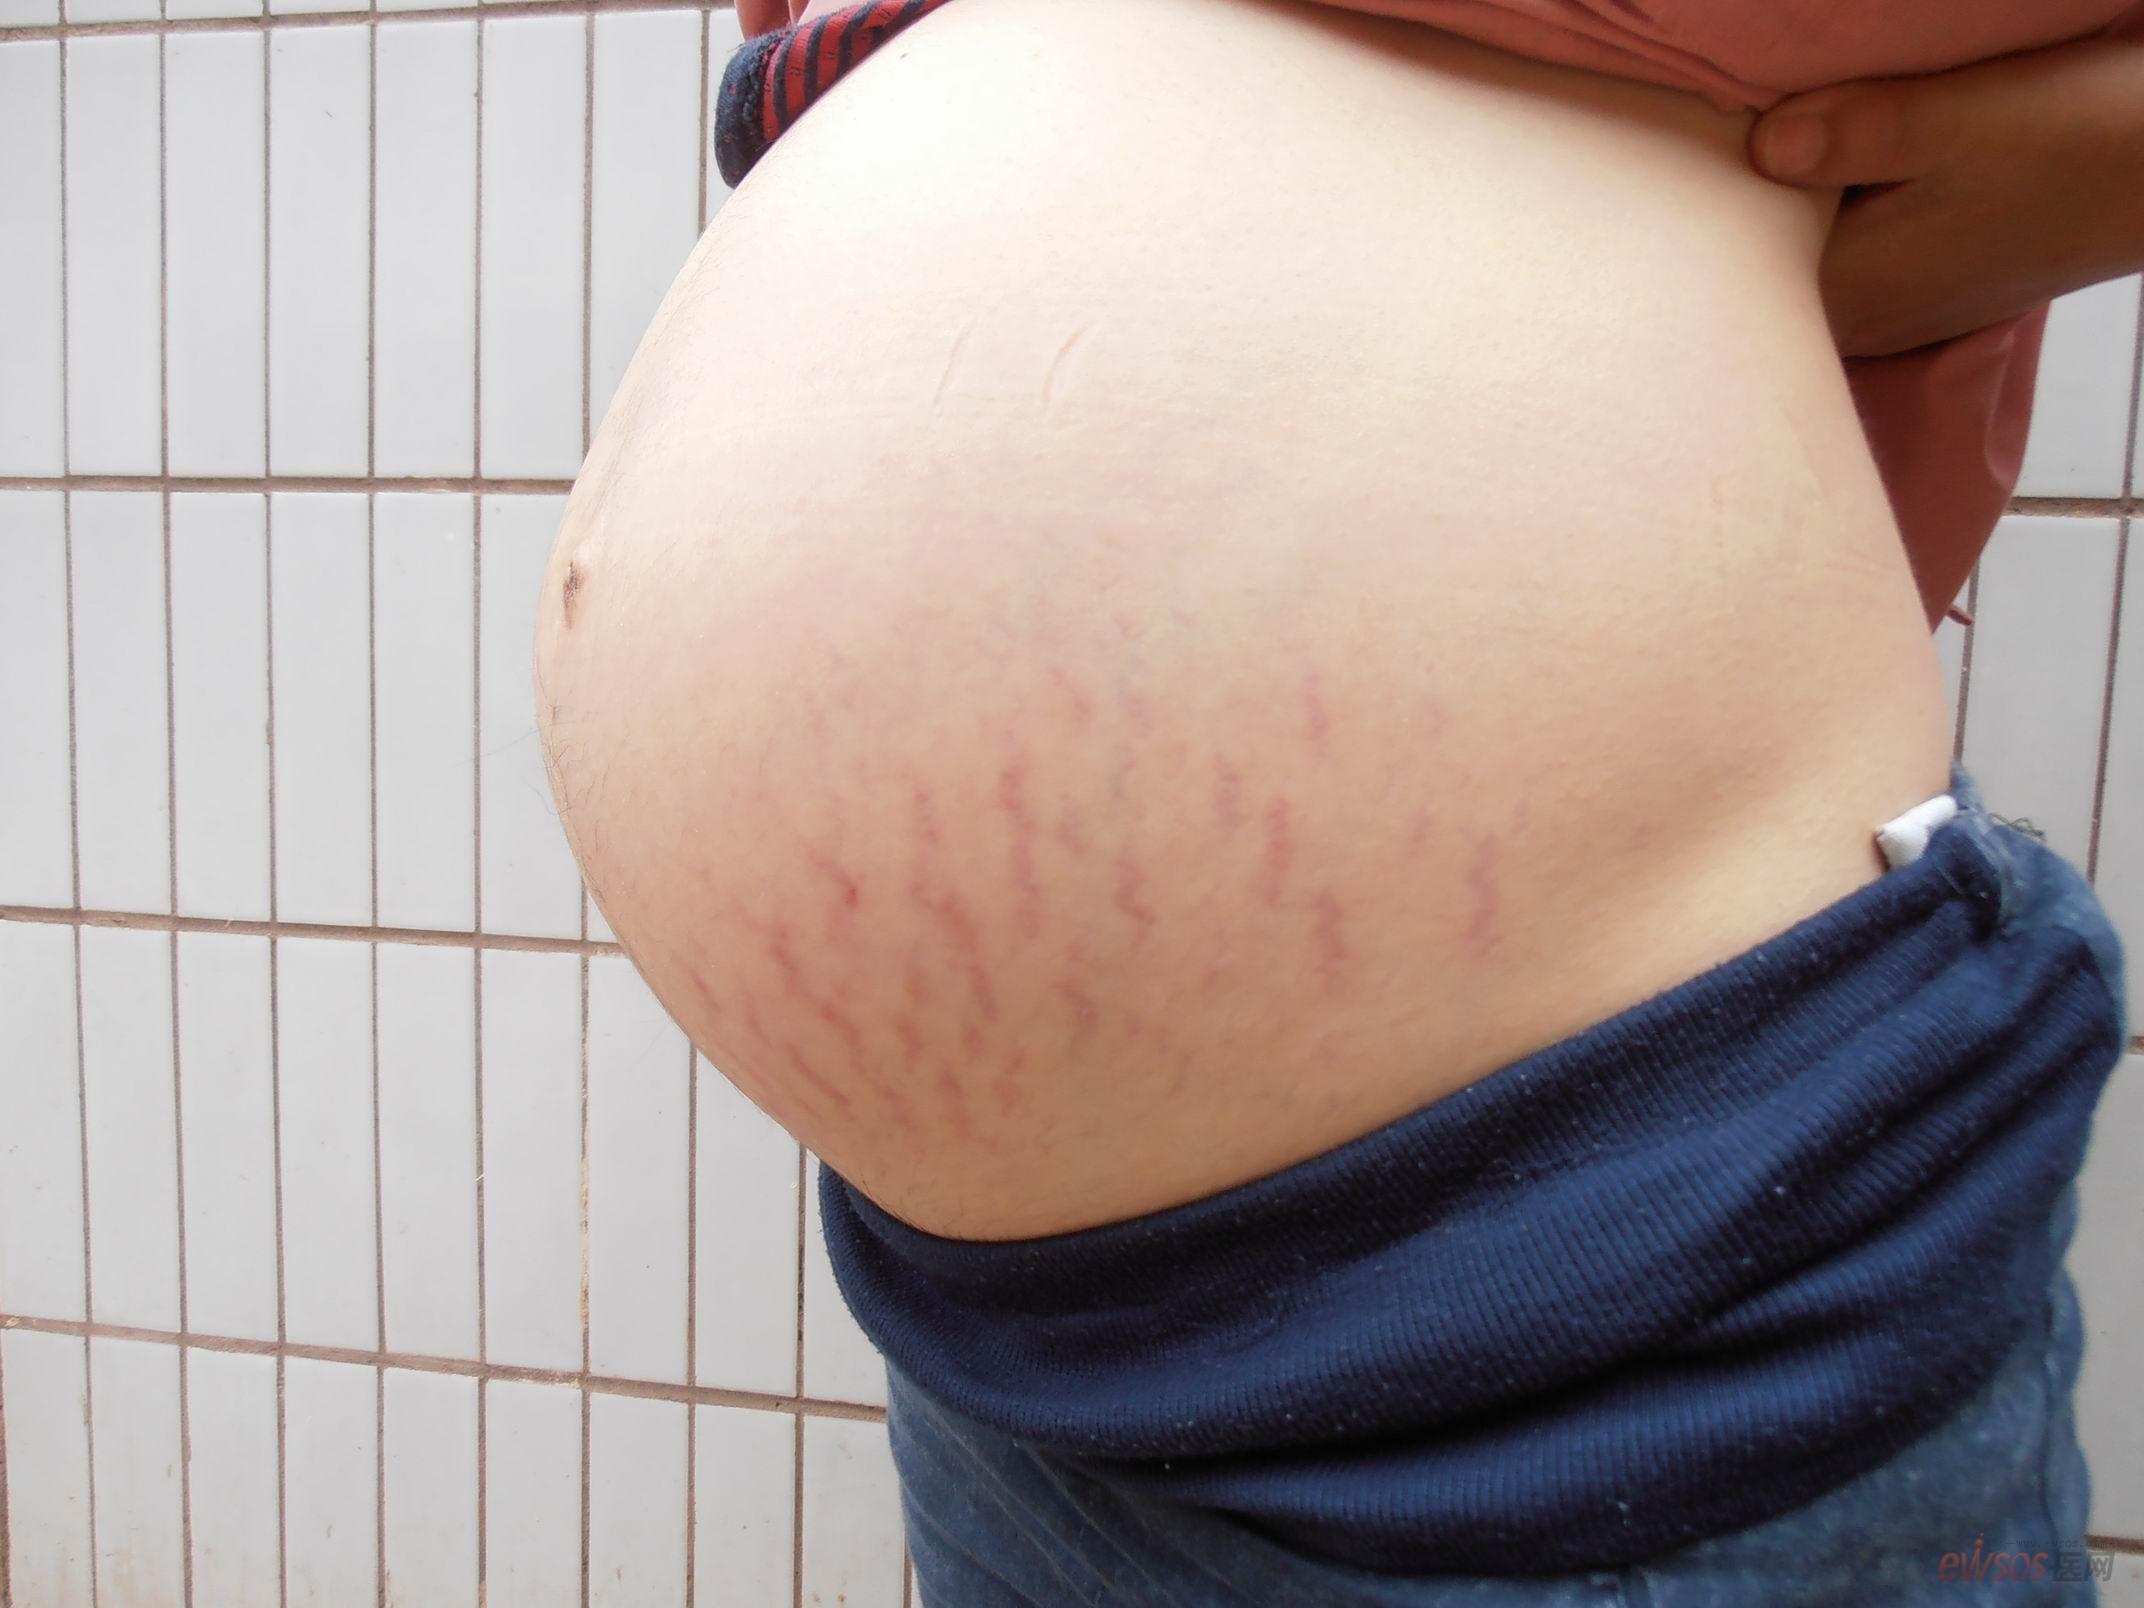 妊娠纹是由于弹性纤维破裂形成